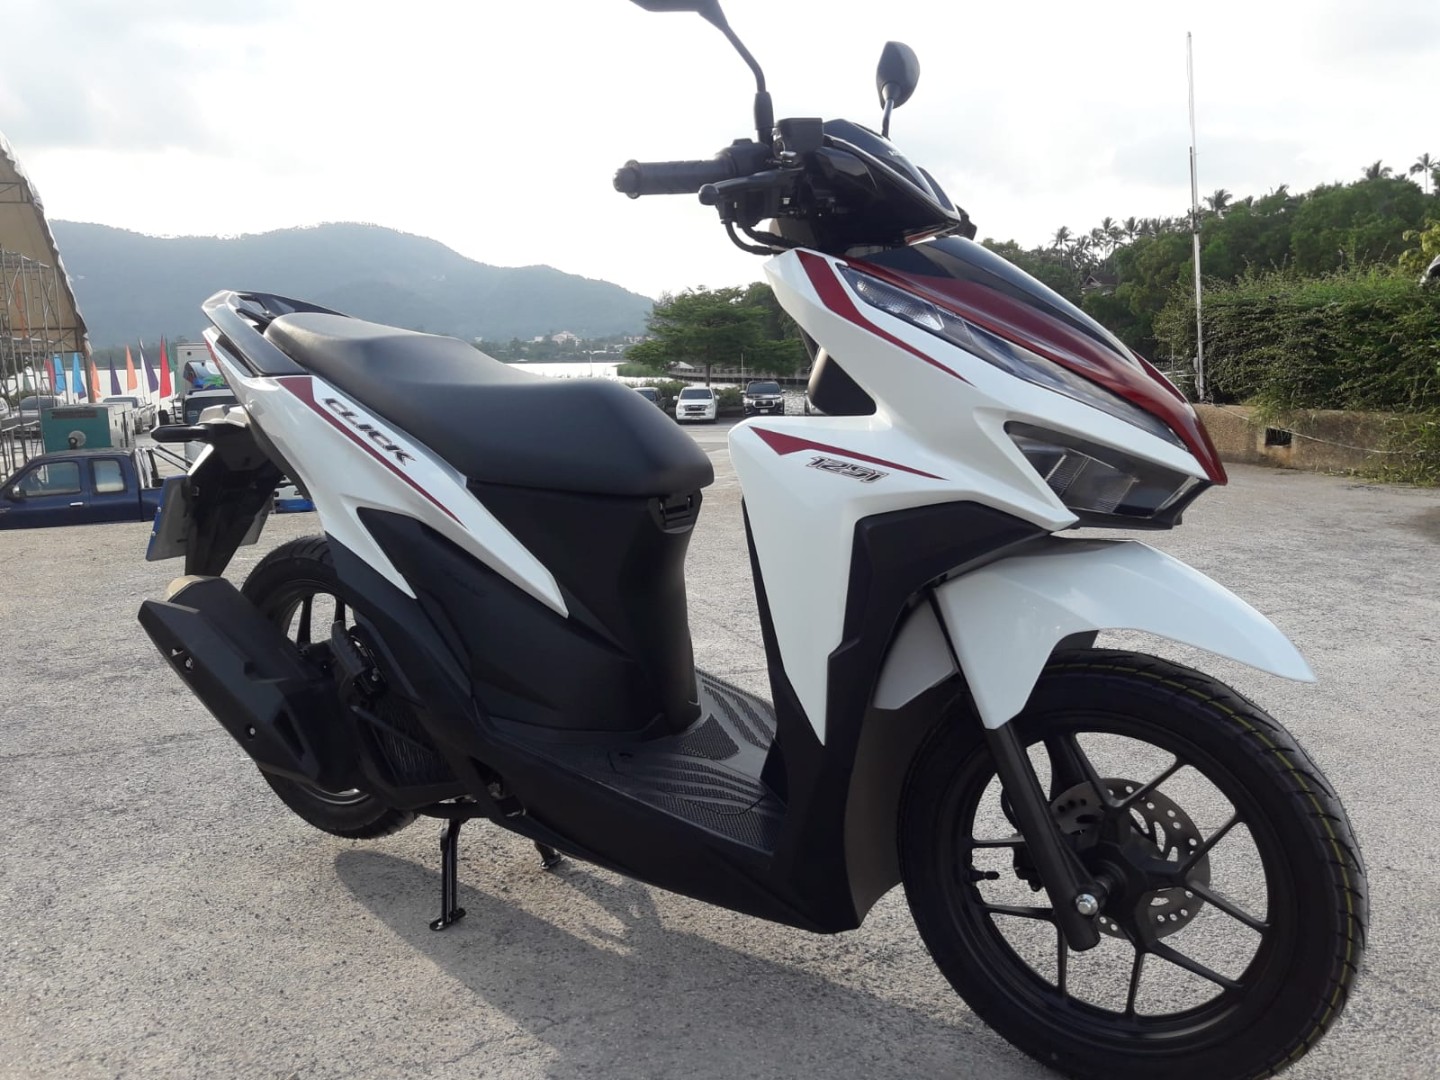 Xe máy Honda Made in Thailand ra mắt gây sốt nhờ loạt nâng cấp cốp chứa  đồ 18 lít